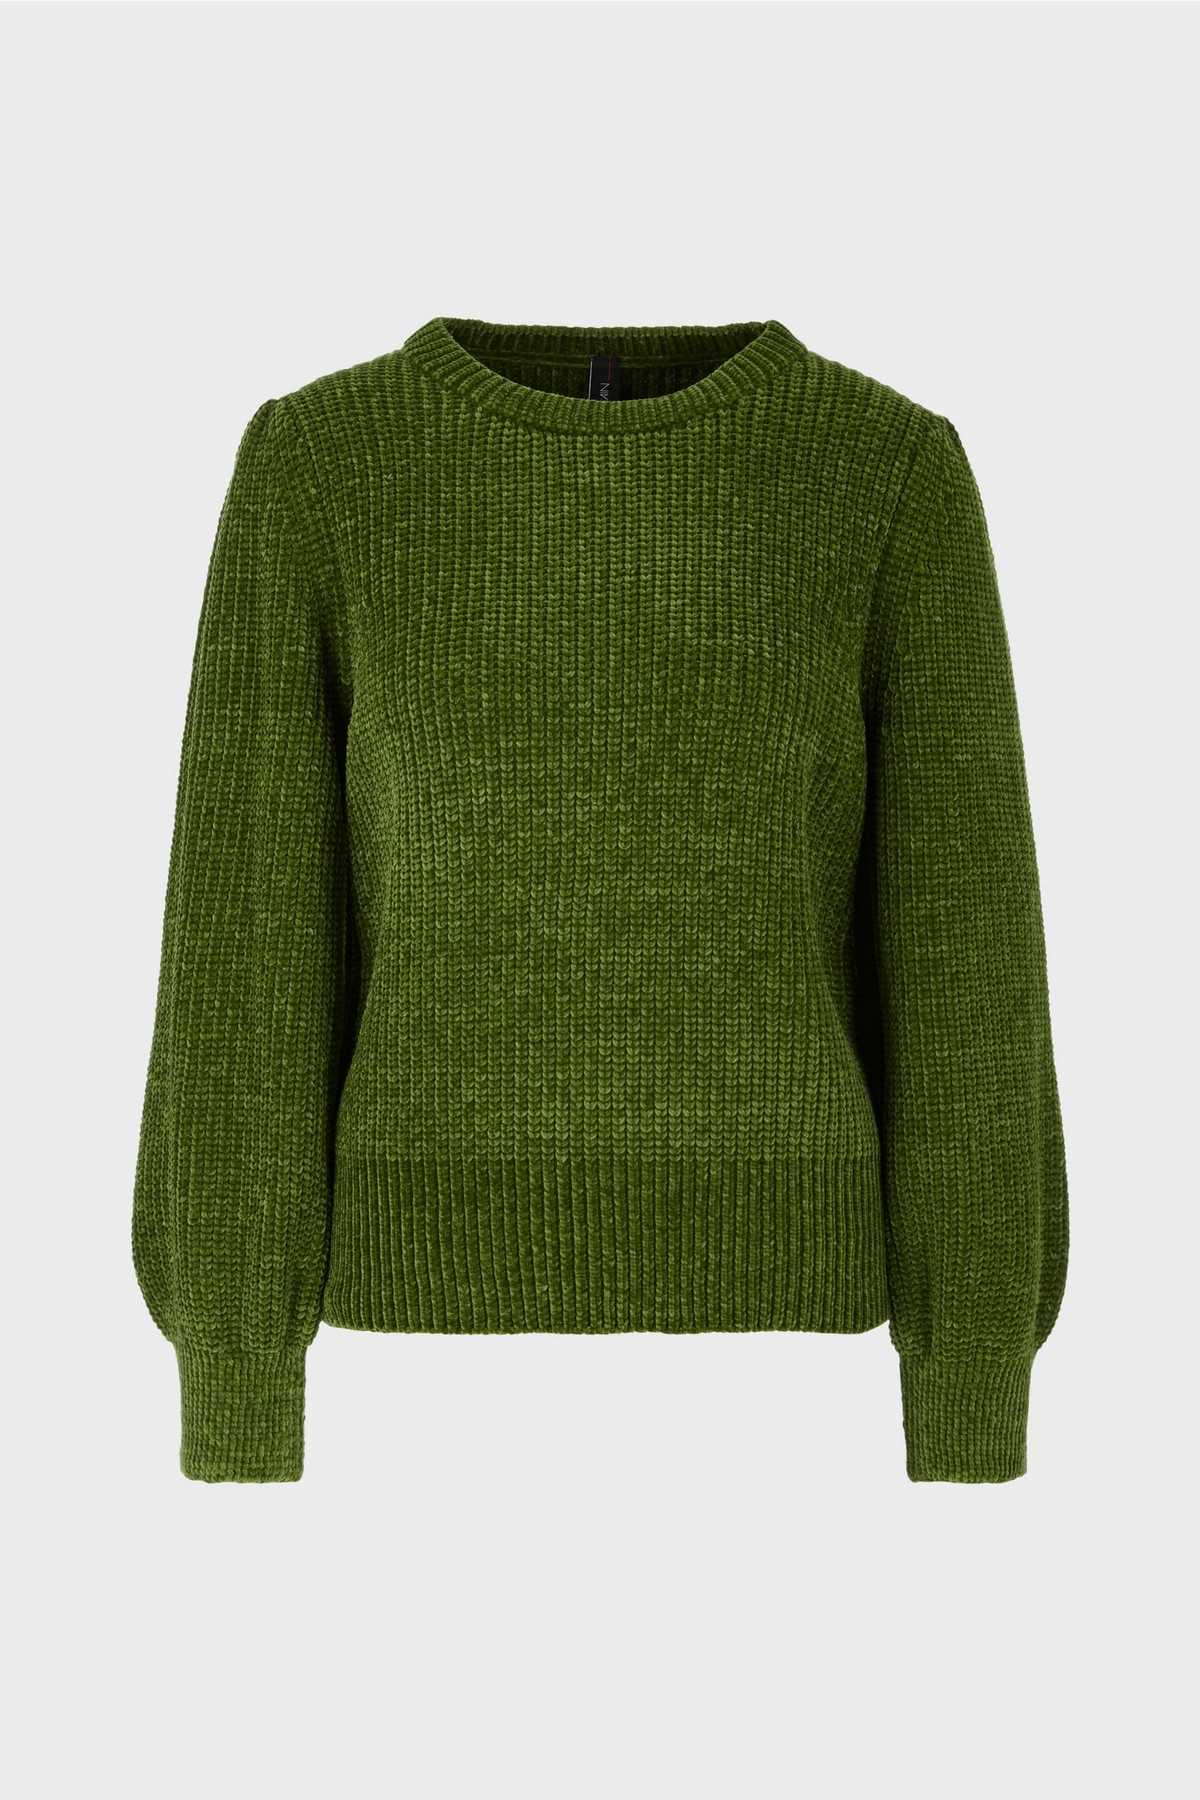 Sweaterpull spons in de kleur groen van het merk Marc Cain Collections